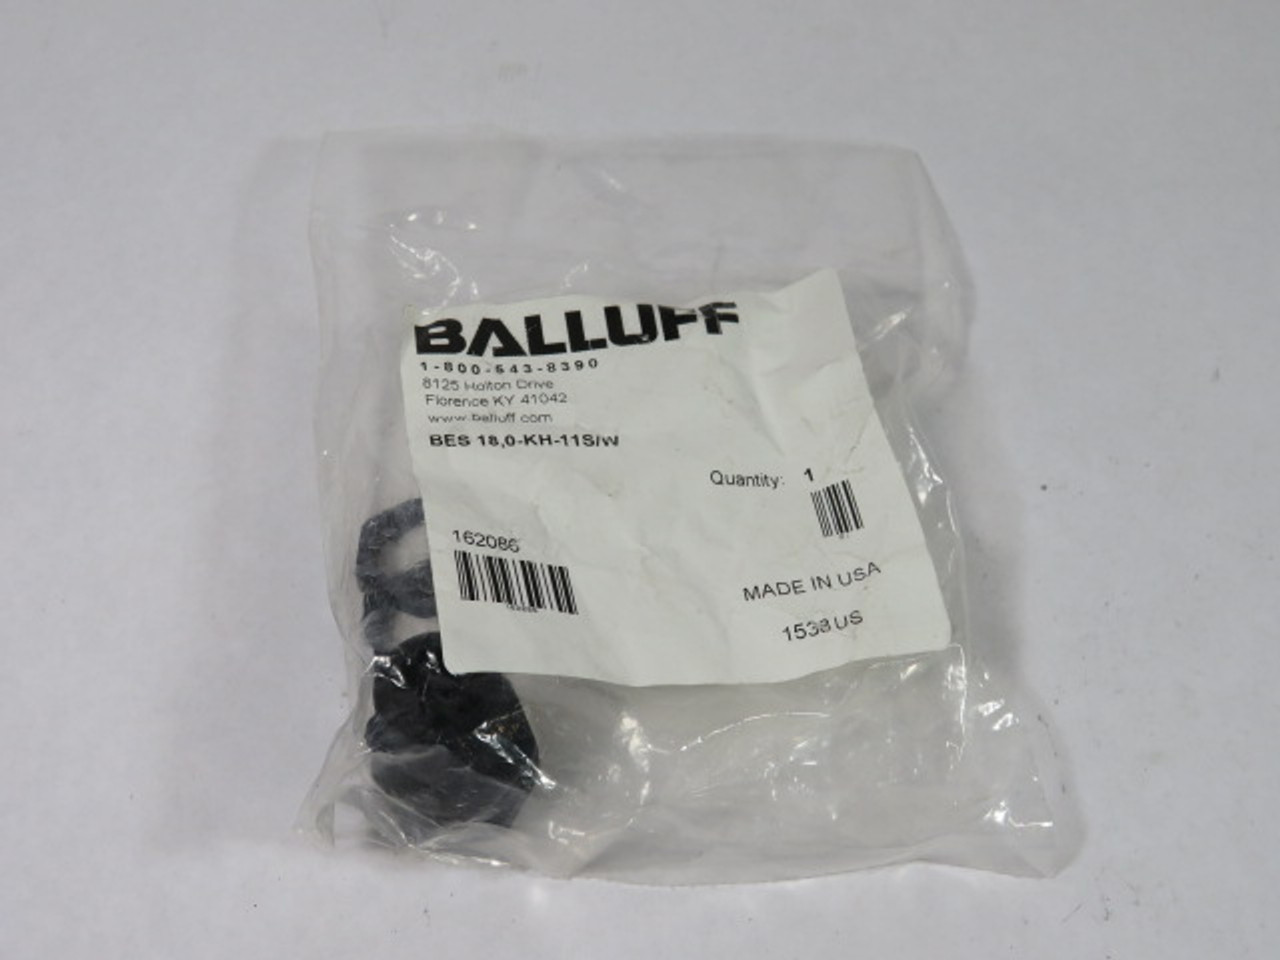 Balluff BES-18,0-KH-11S/W Inductive Proximity Sensor Accessory 25Nm ! NWB !